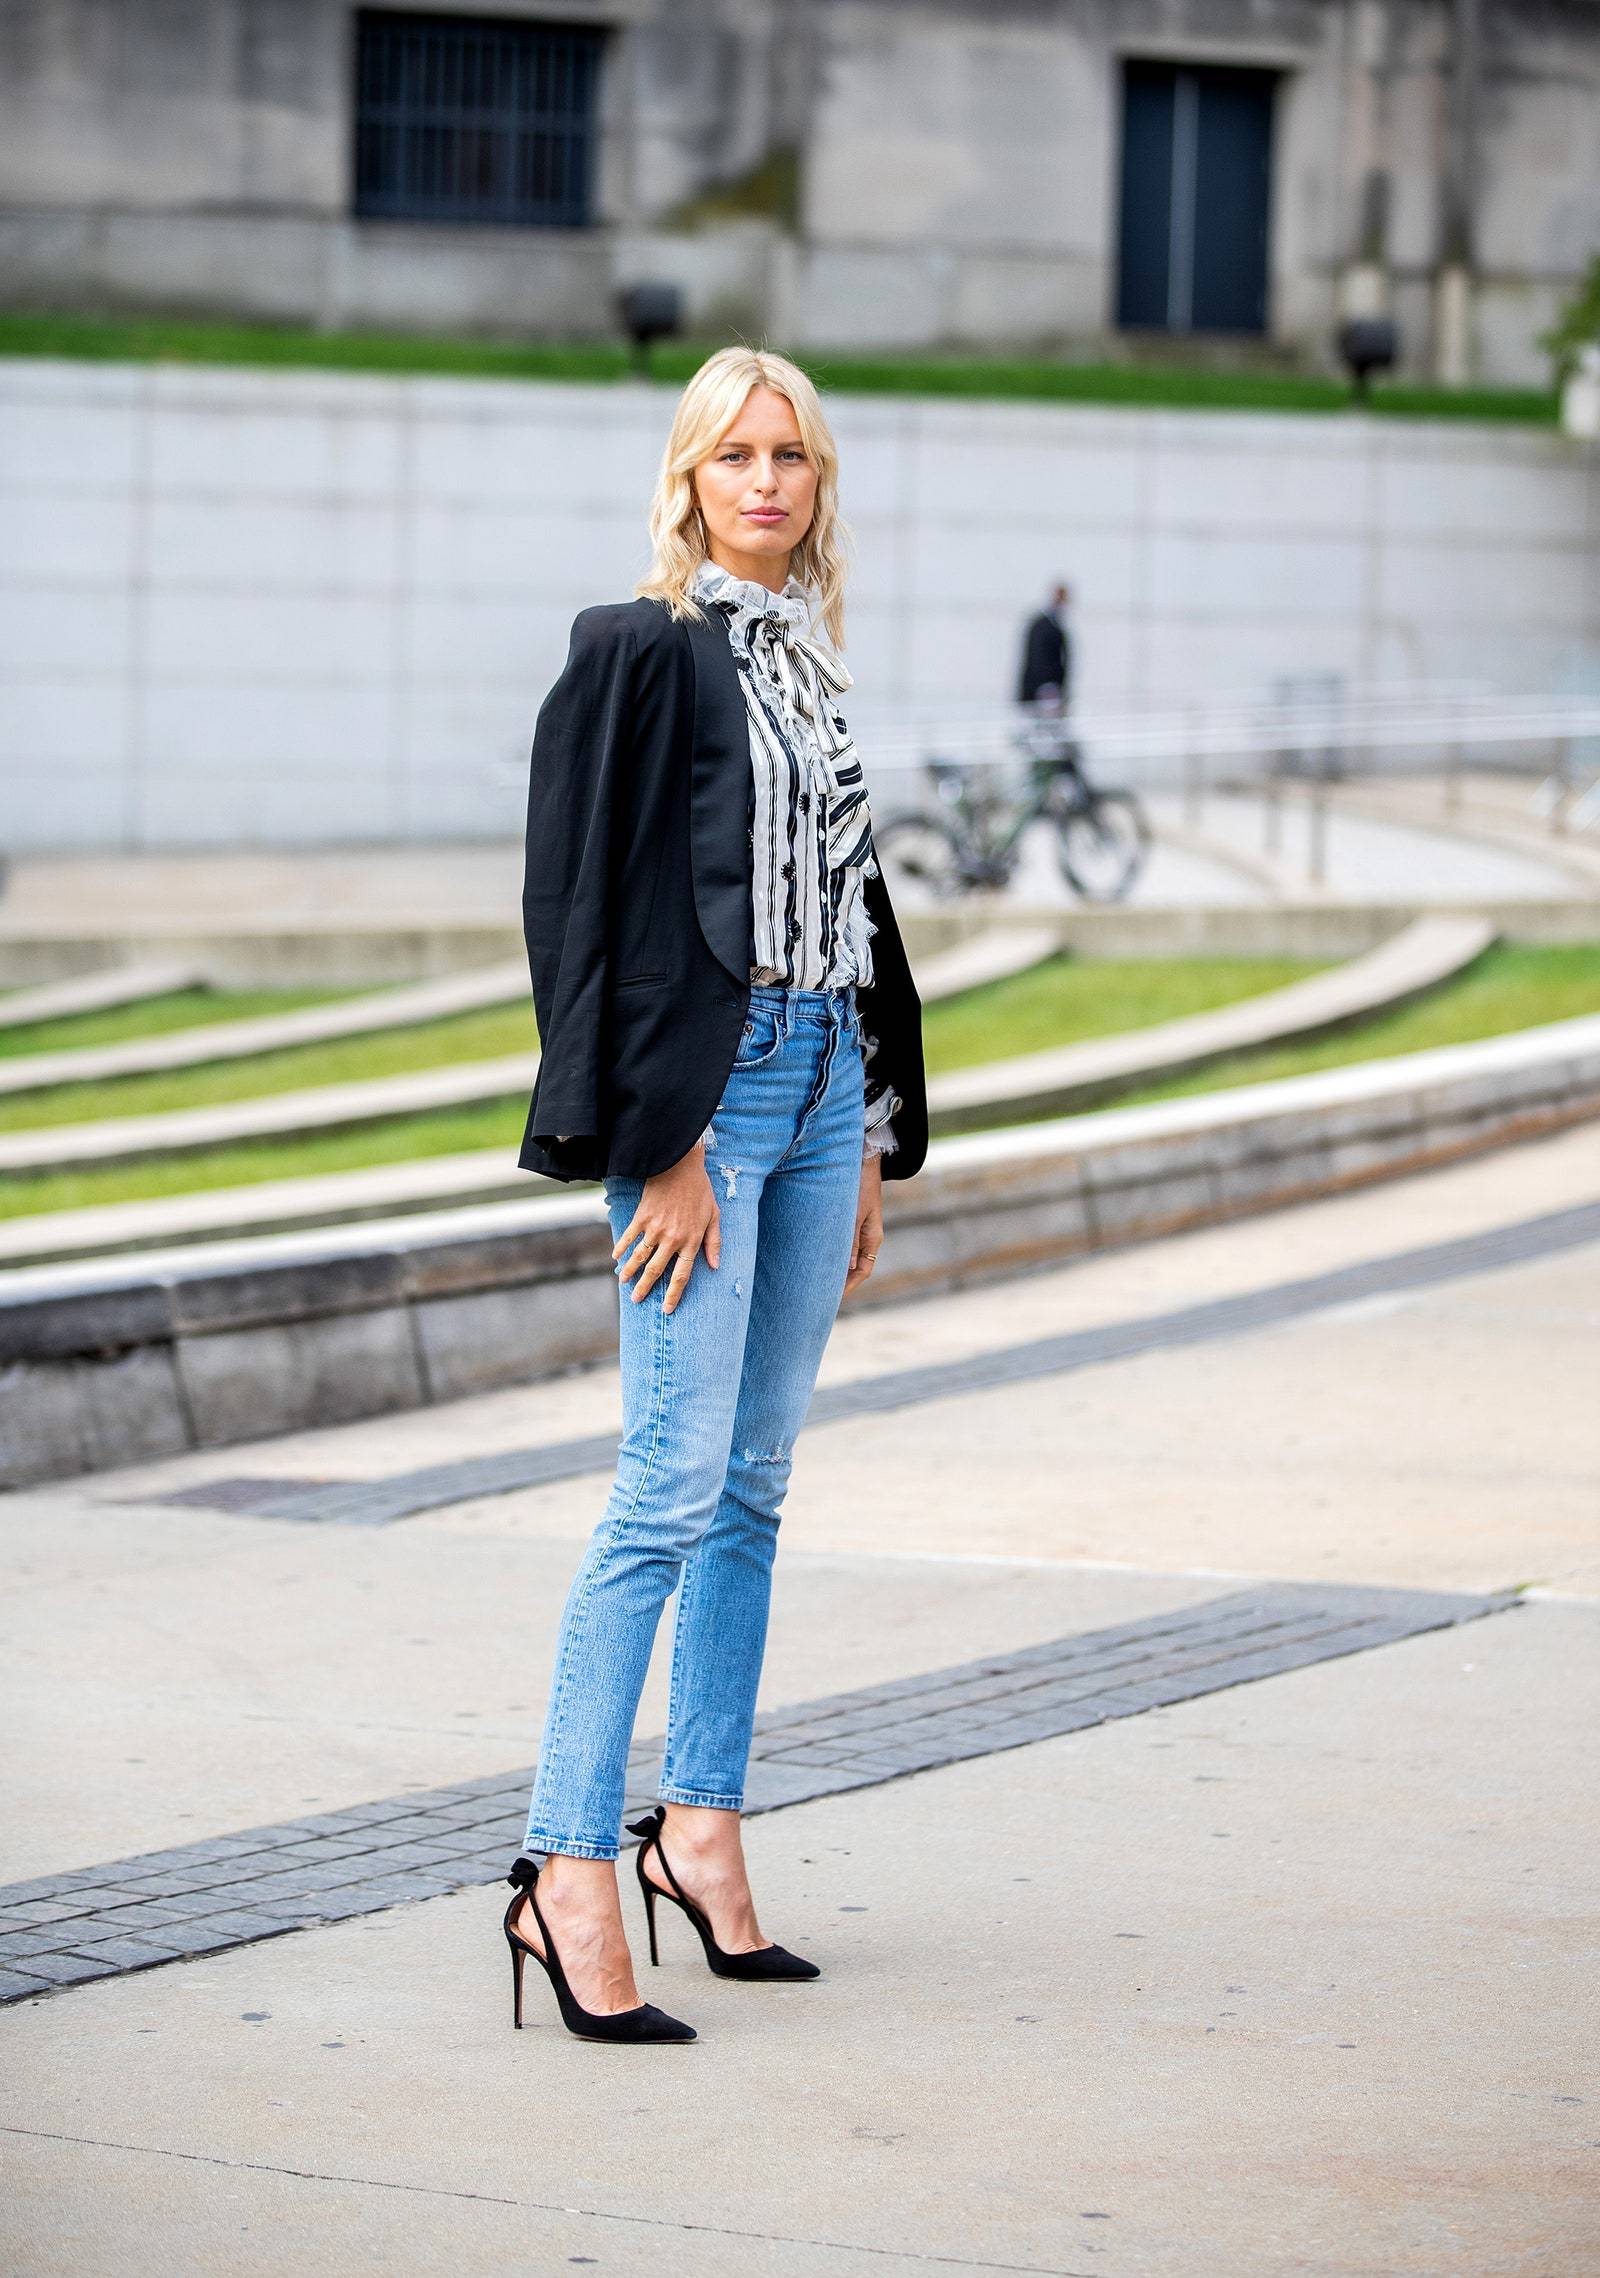 Jeansy damskie skinny pasują do szpilek i eleganckiej bluzki (Fot. Getty Images)